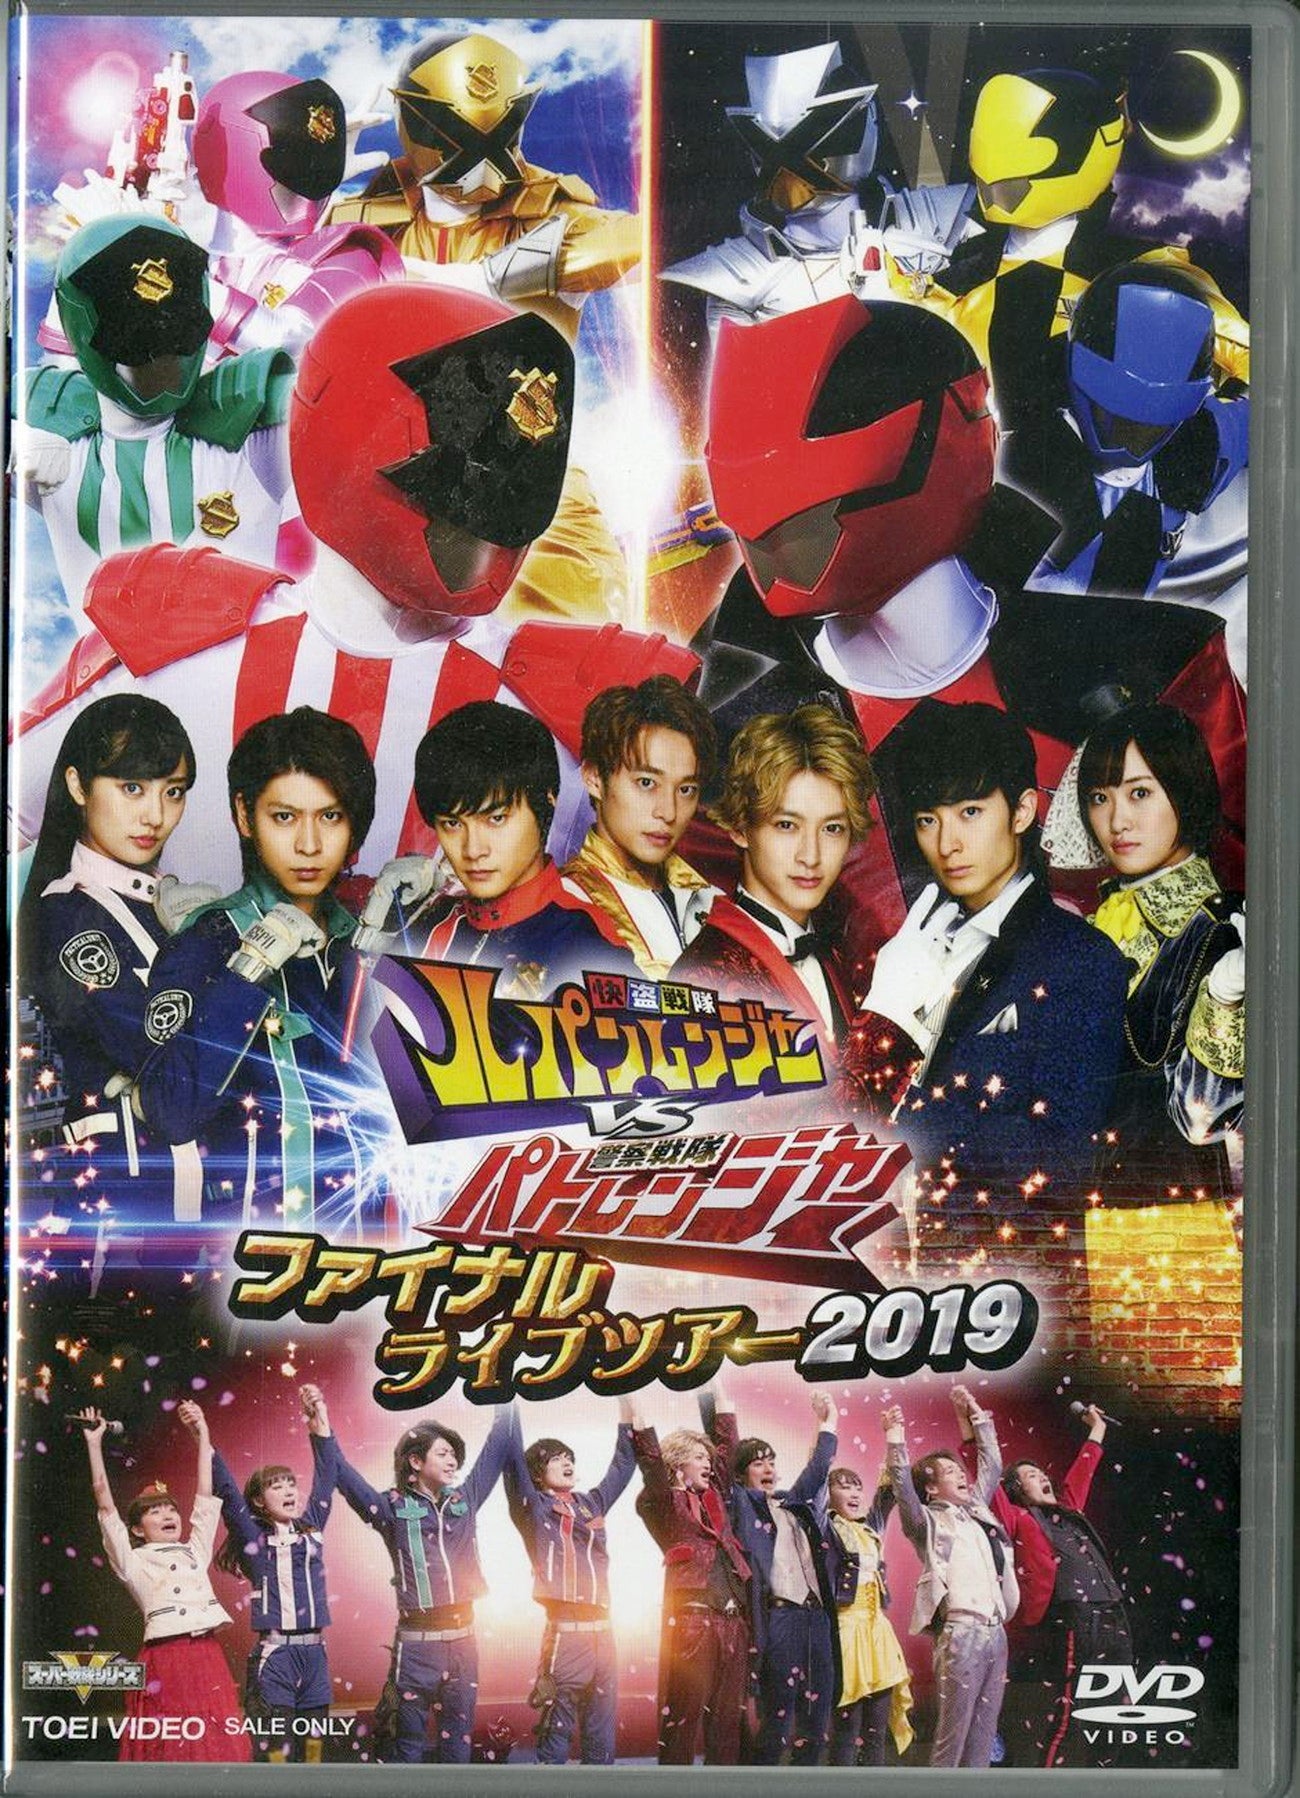 Kaitou Sentai Lupinranger Vs Keisatsu Sentai Patranger - Kaitou Sentai Lupinranger Vs Keisatsu Sentai Patranger Final Live Tour 2019